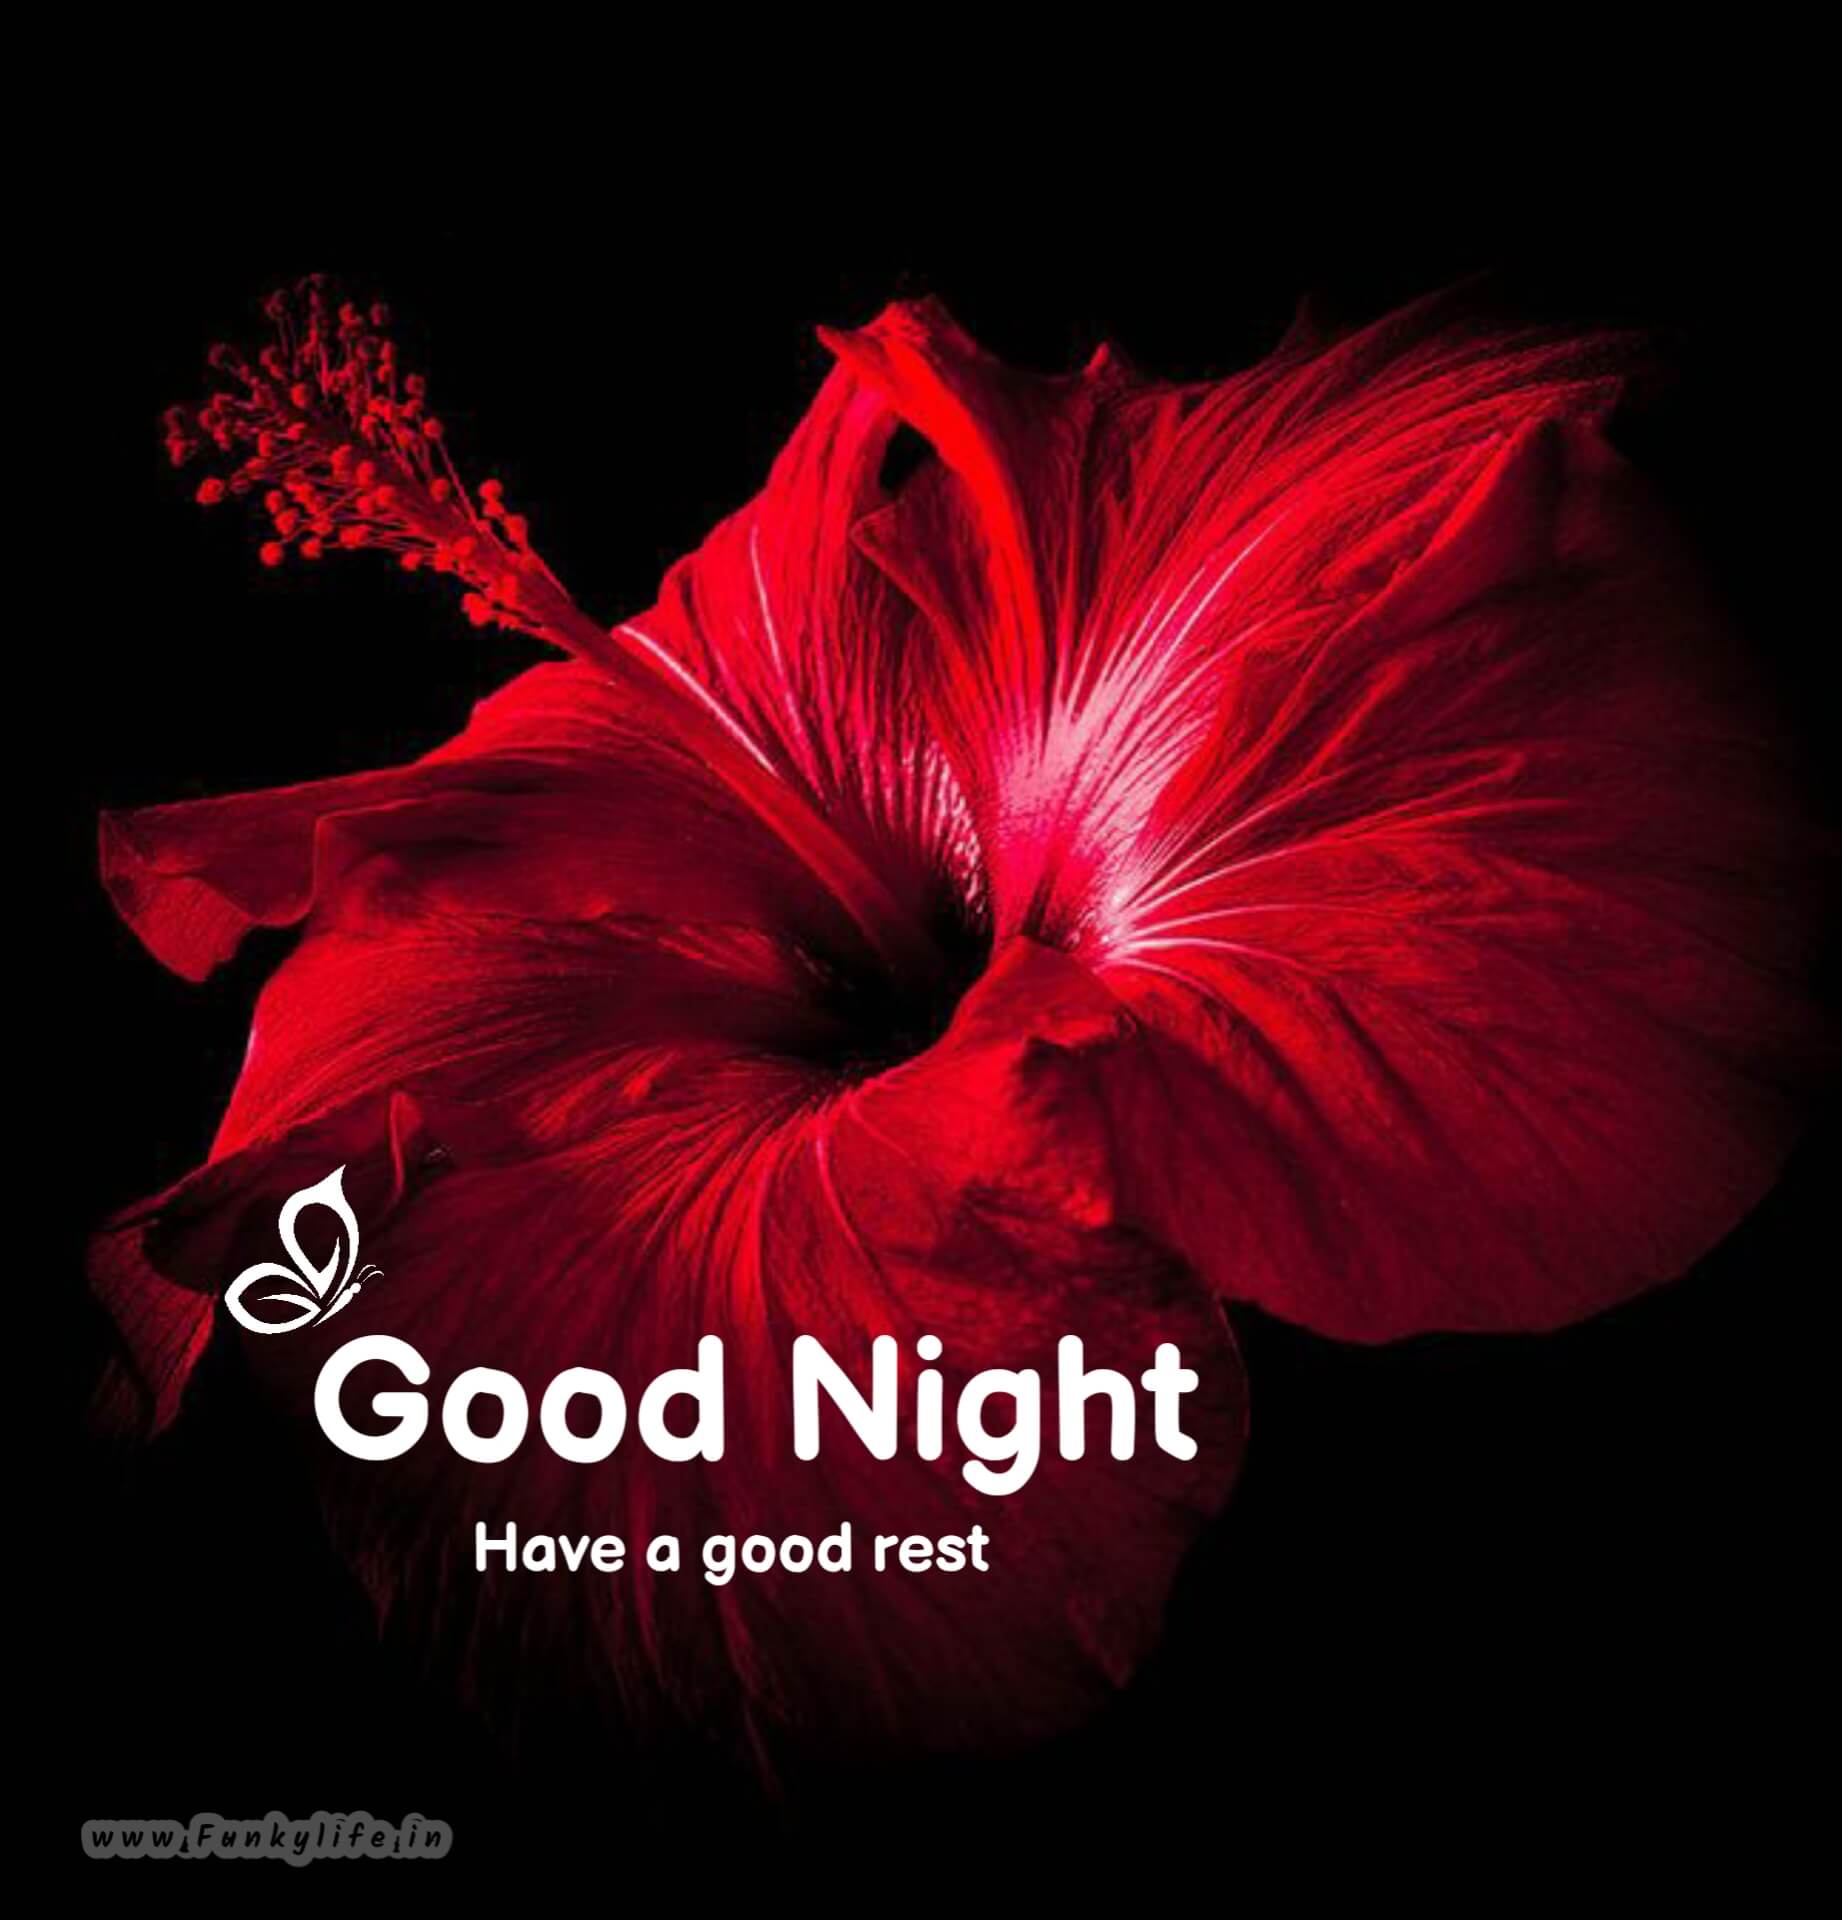 Flower Good Night Image